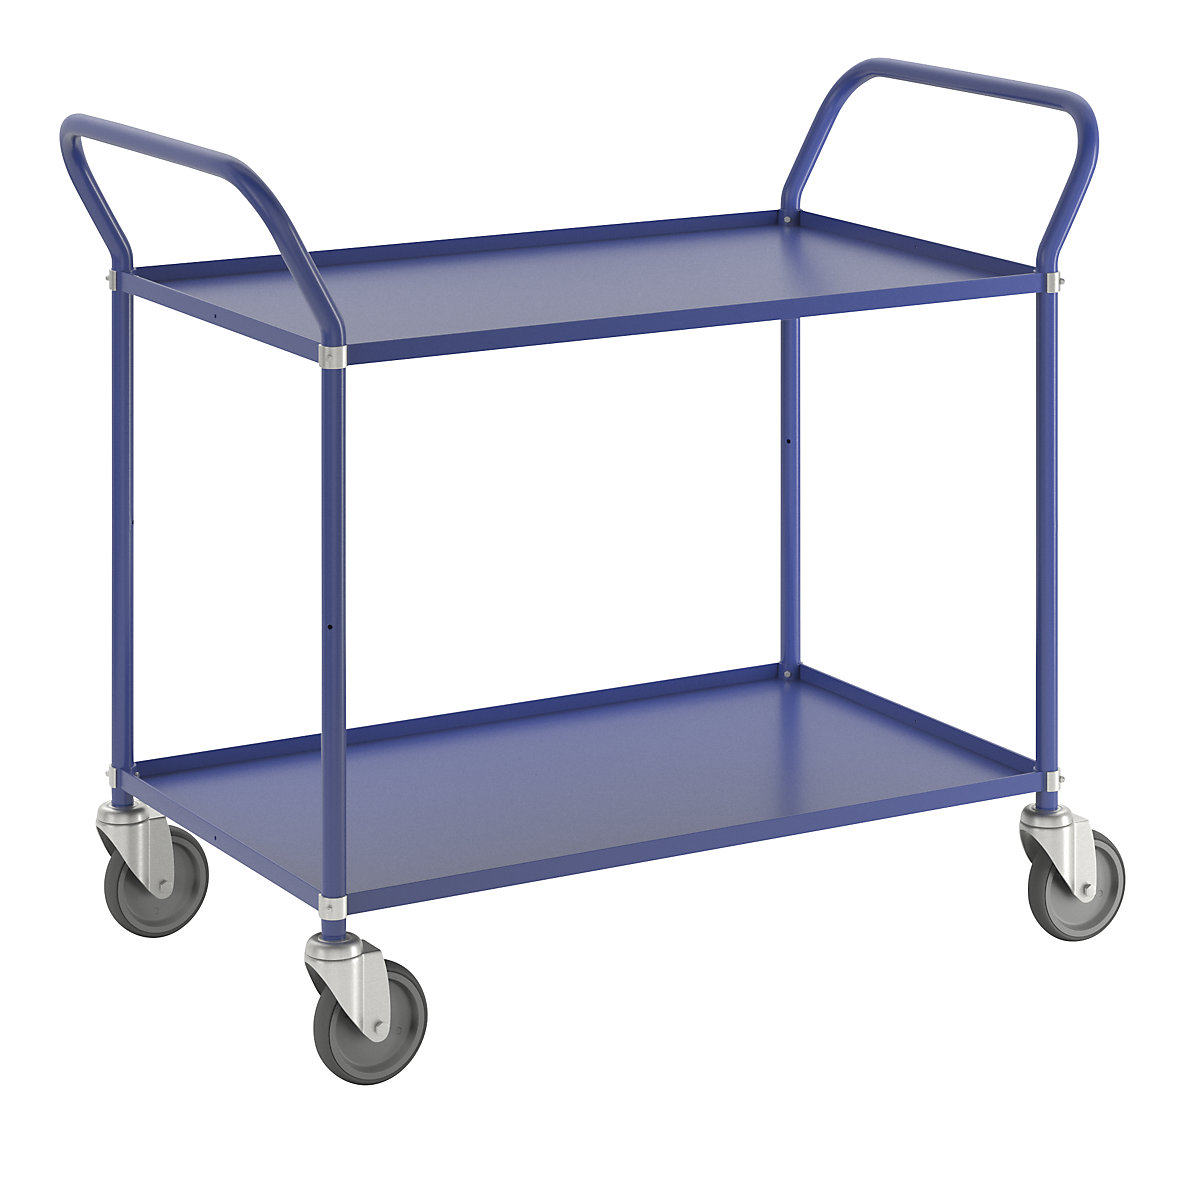 Lahek večnivojski voziček višine 940 mm – Kongamek, 2 kovinski polici, modre barve, 4 vrtljiva kolesa-4